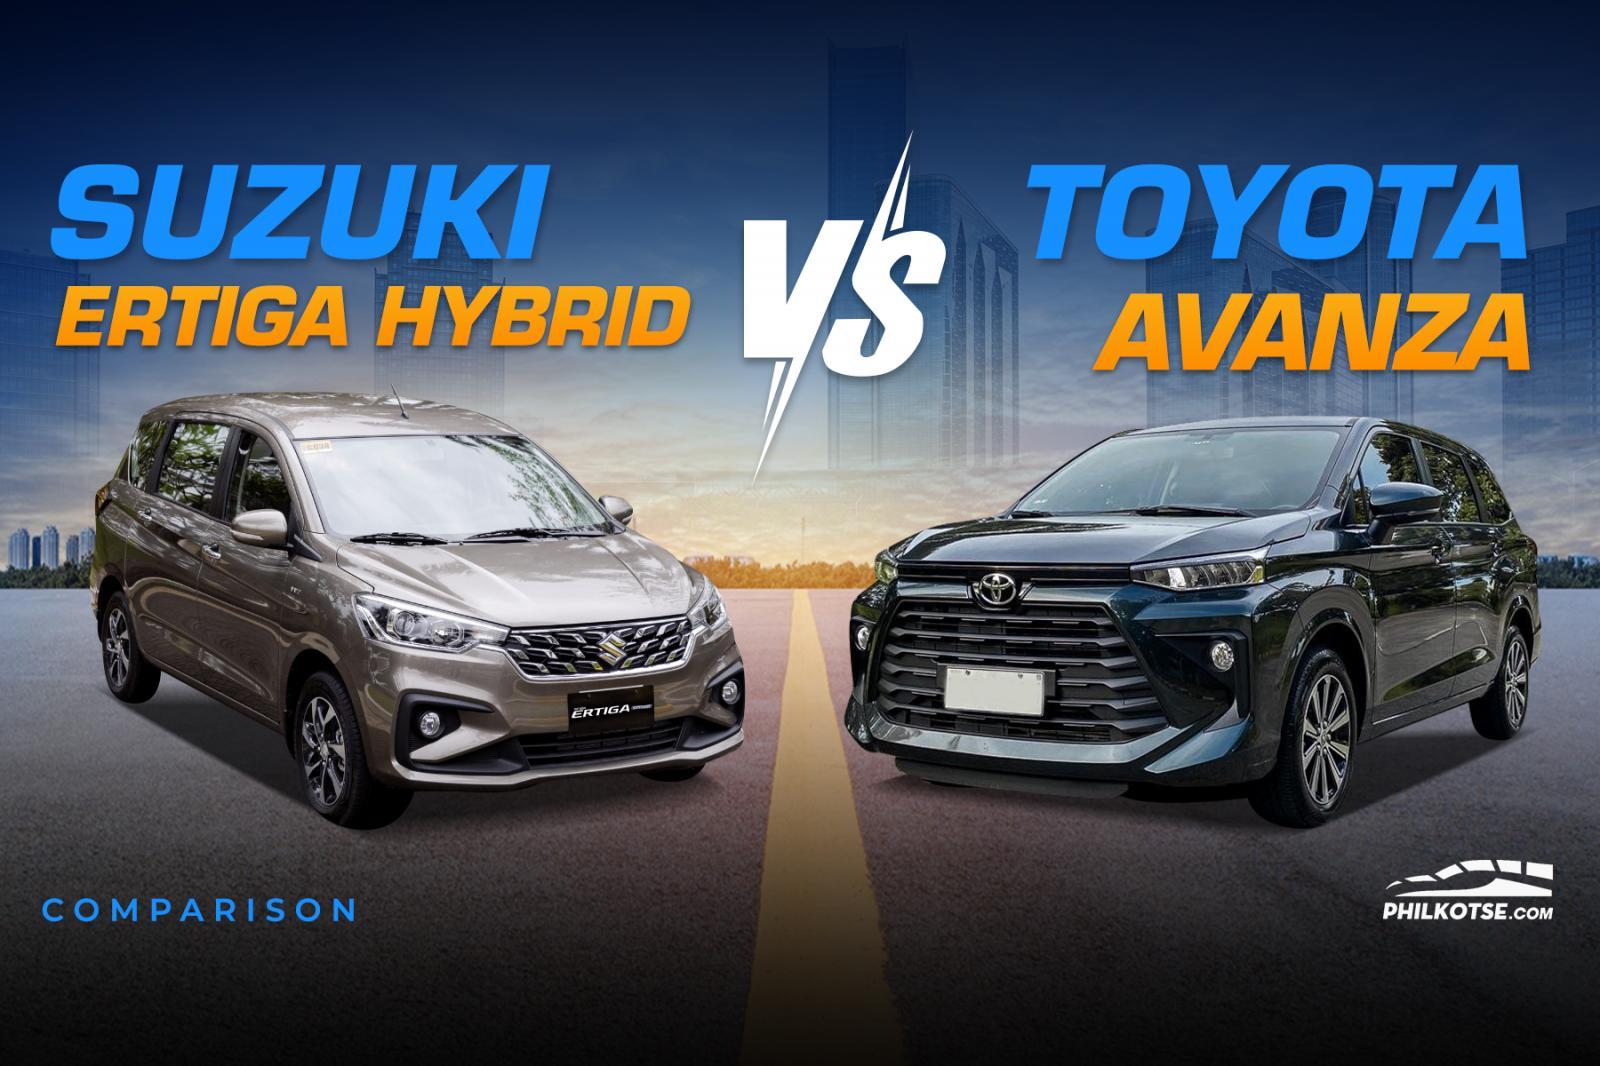 A picture of the Suzuki Ertiga Hybrid and Toyota Avanza head-to-head.